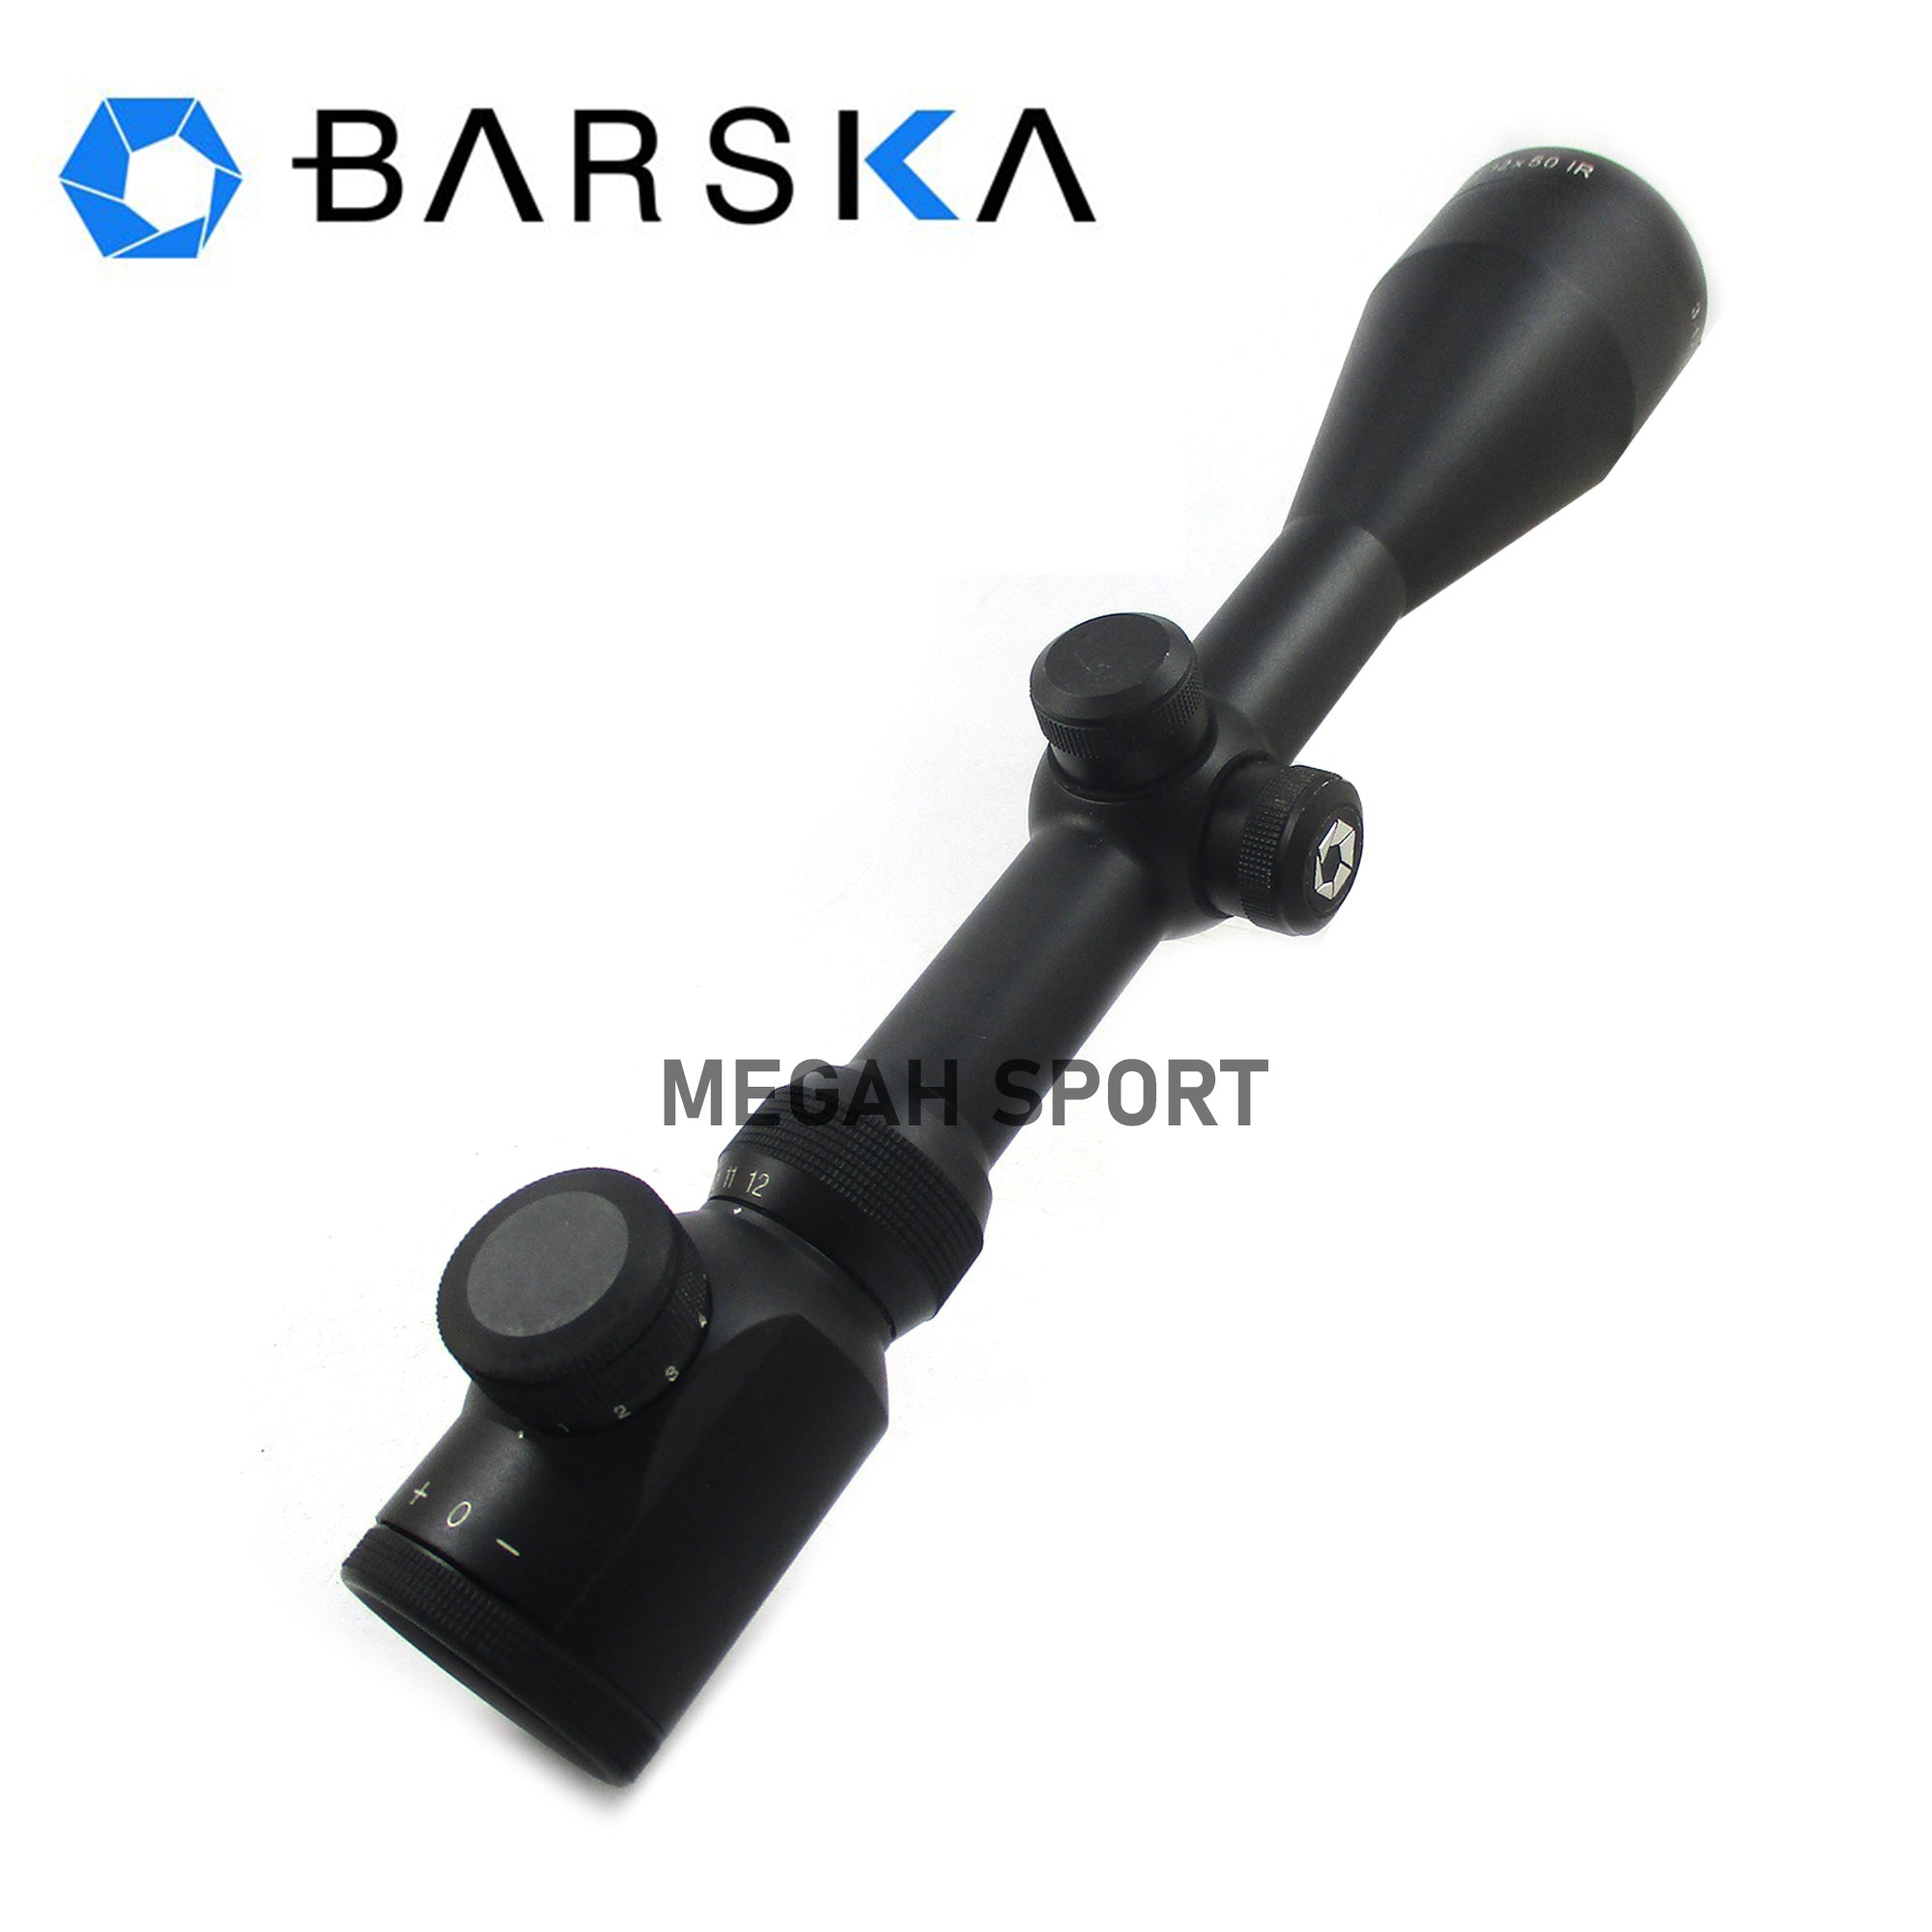 BARSKA 3-12X50 E (TC647) - Megah Sport